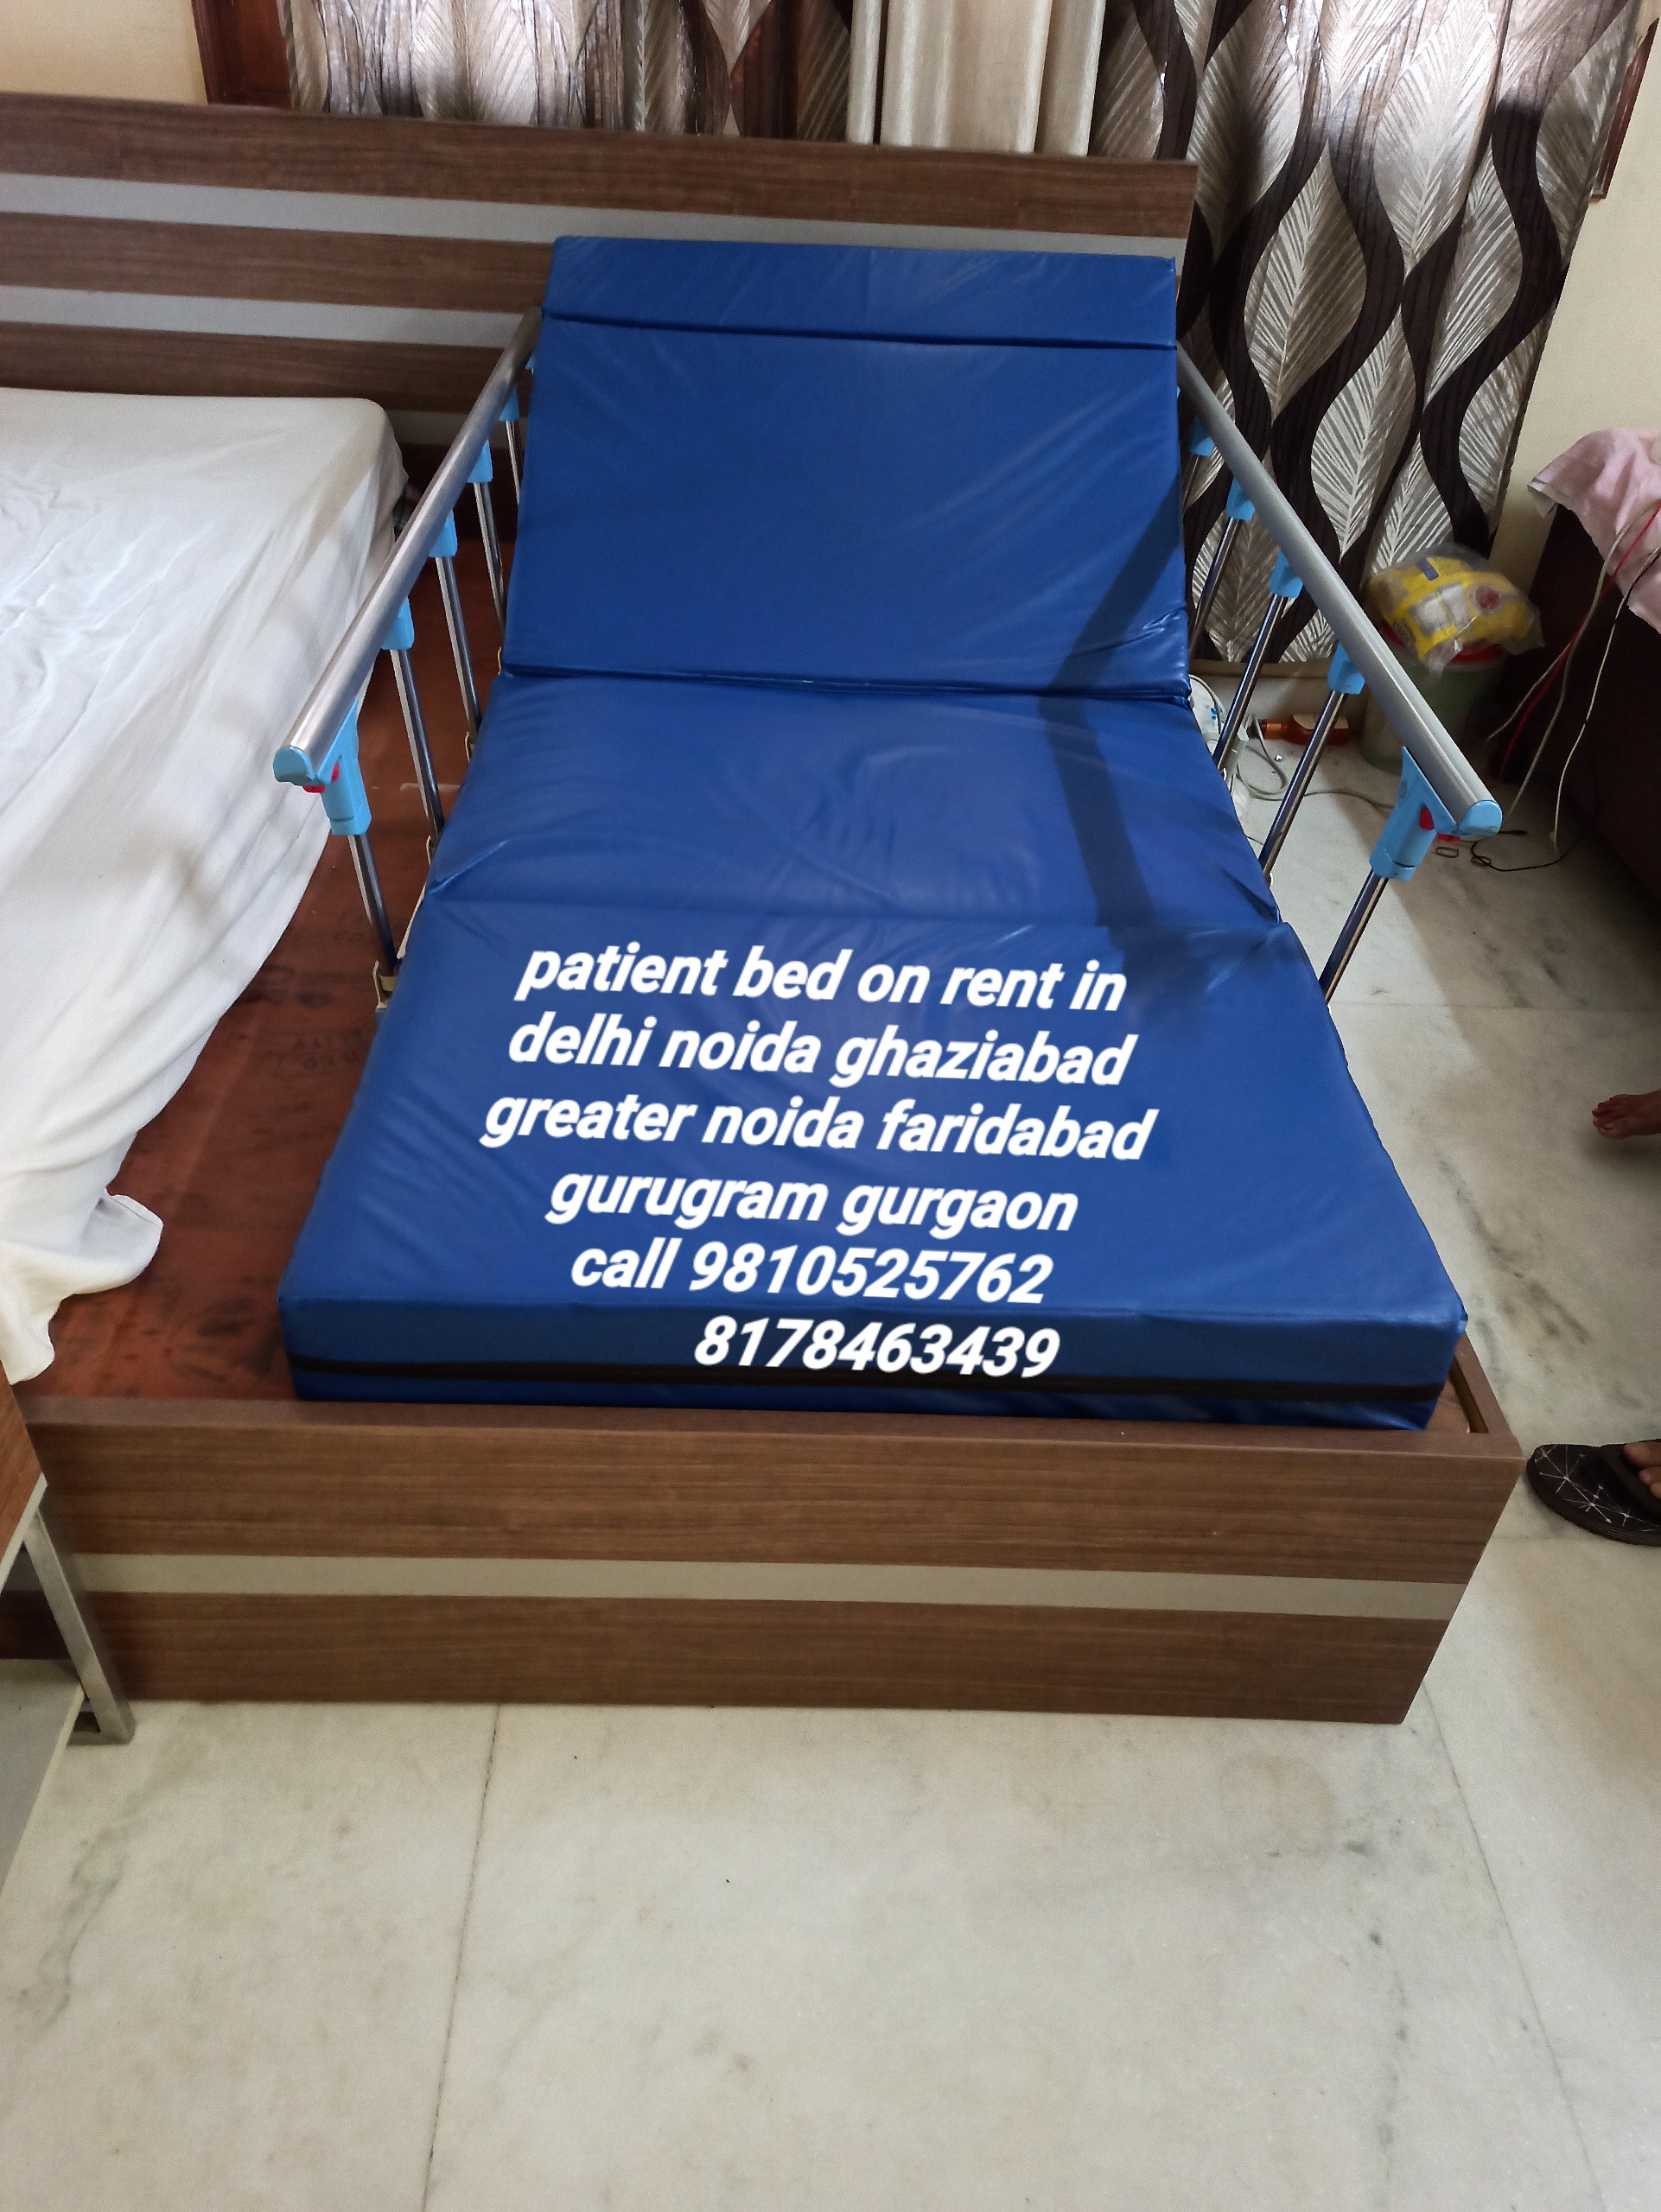 Top Hospital Bed Recliner For Rent Vasundhara Enclave 8178463439